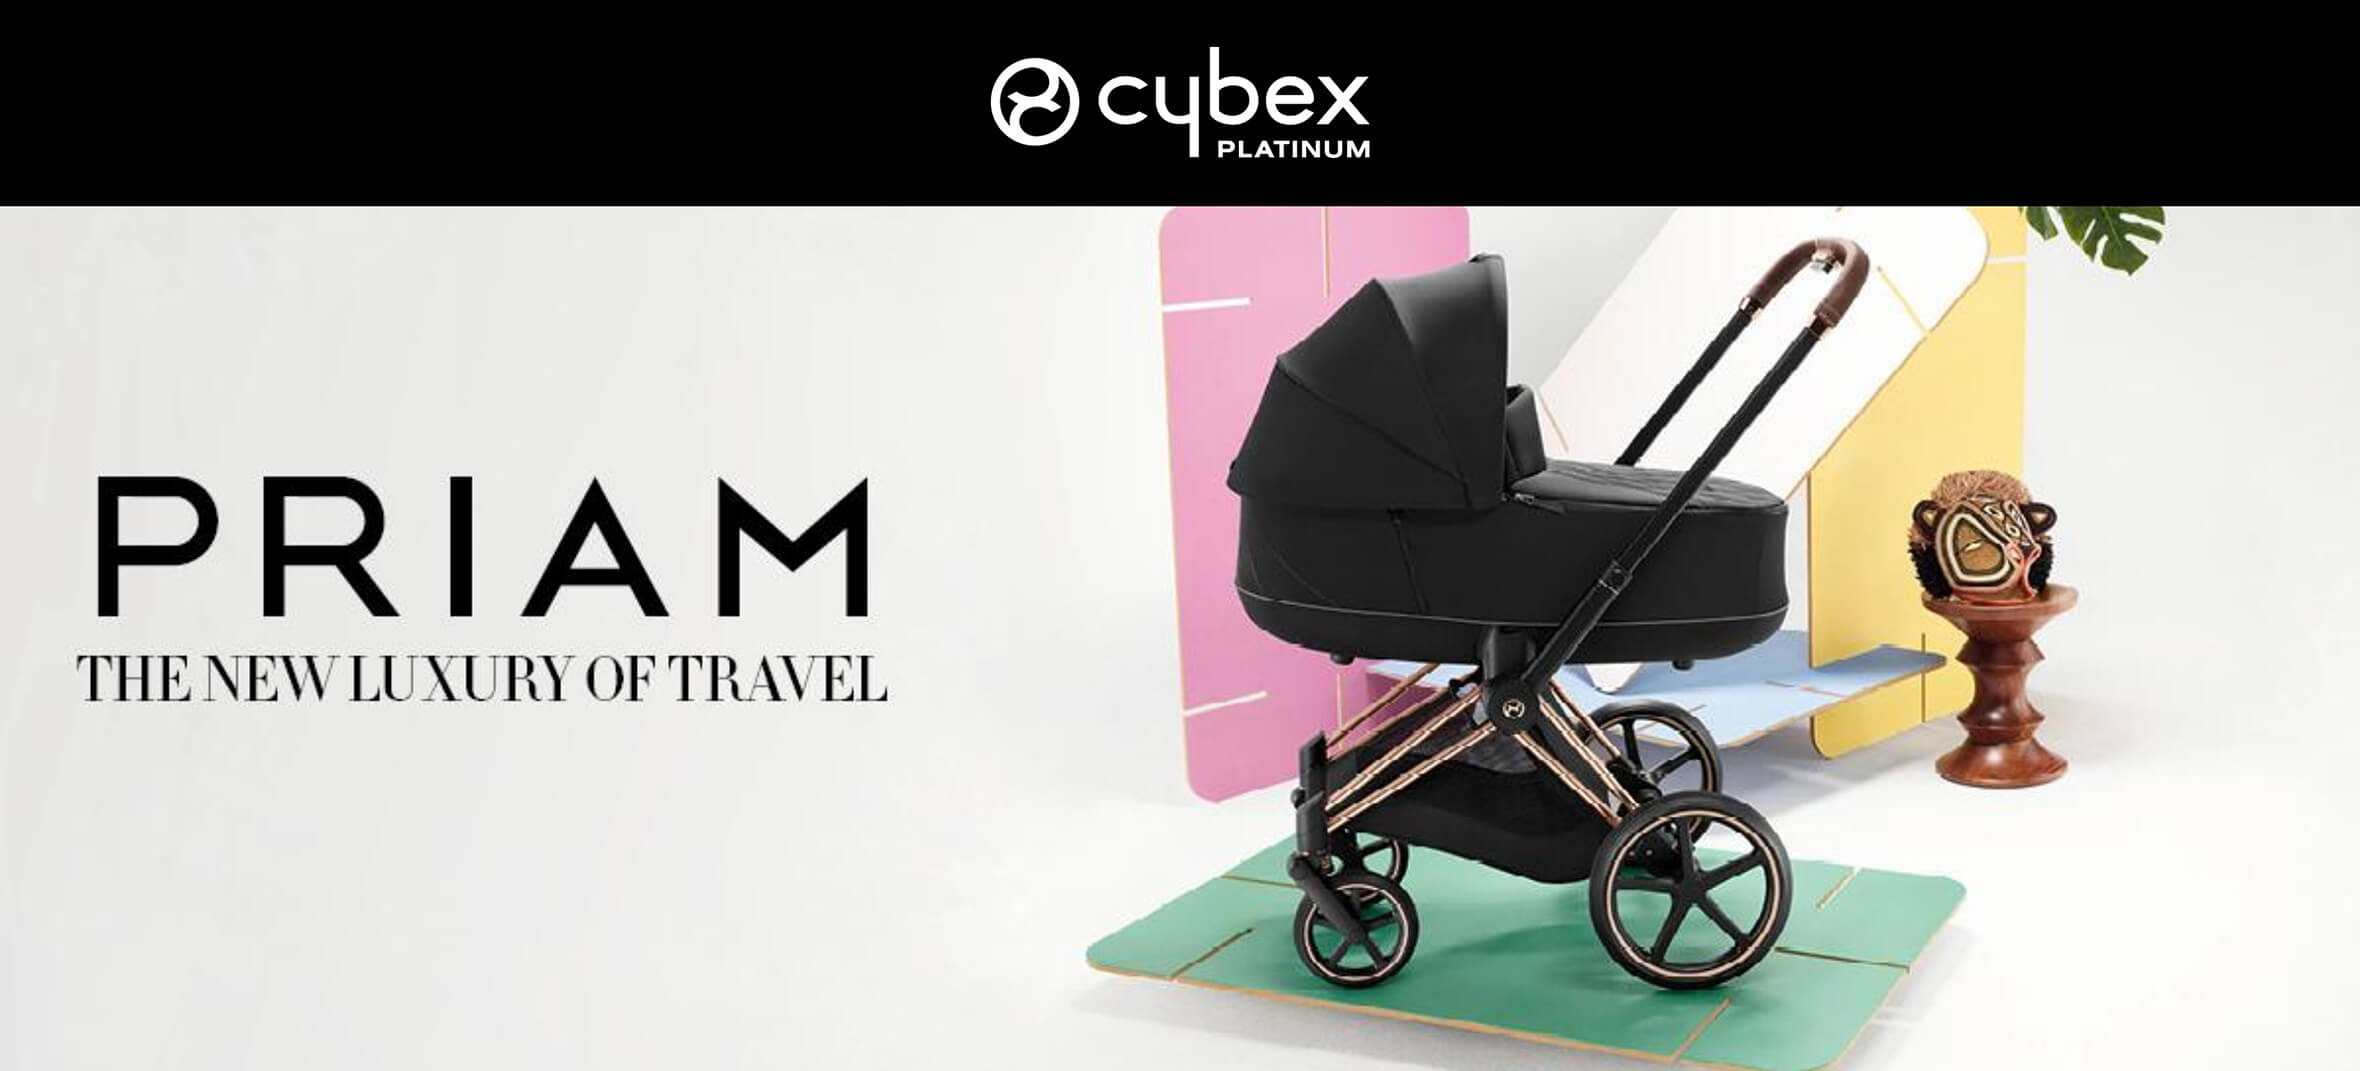 Cybex PRIAM - The new luxury of travel